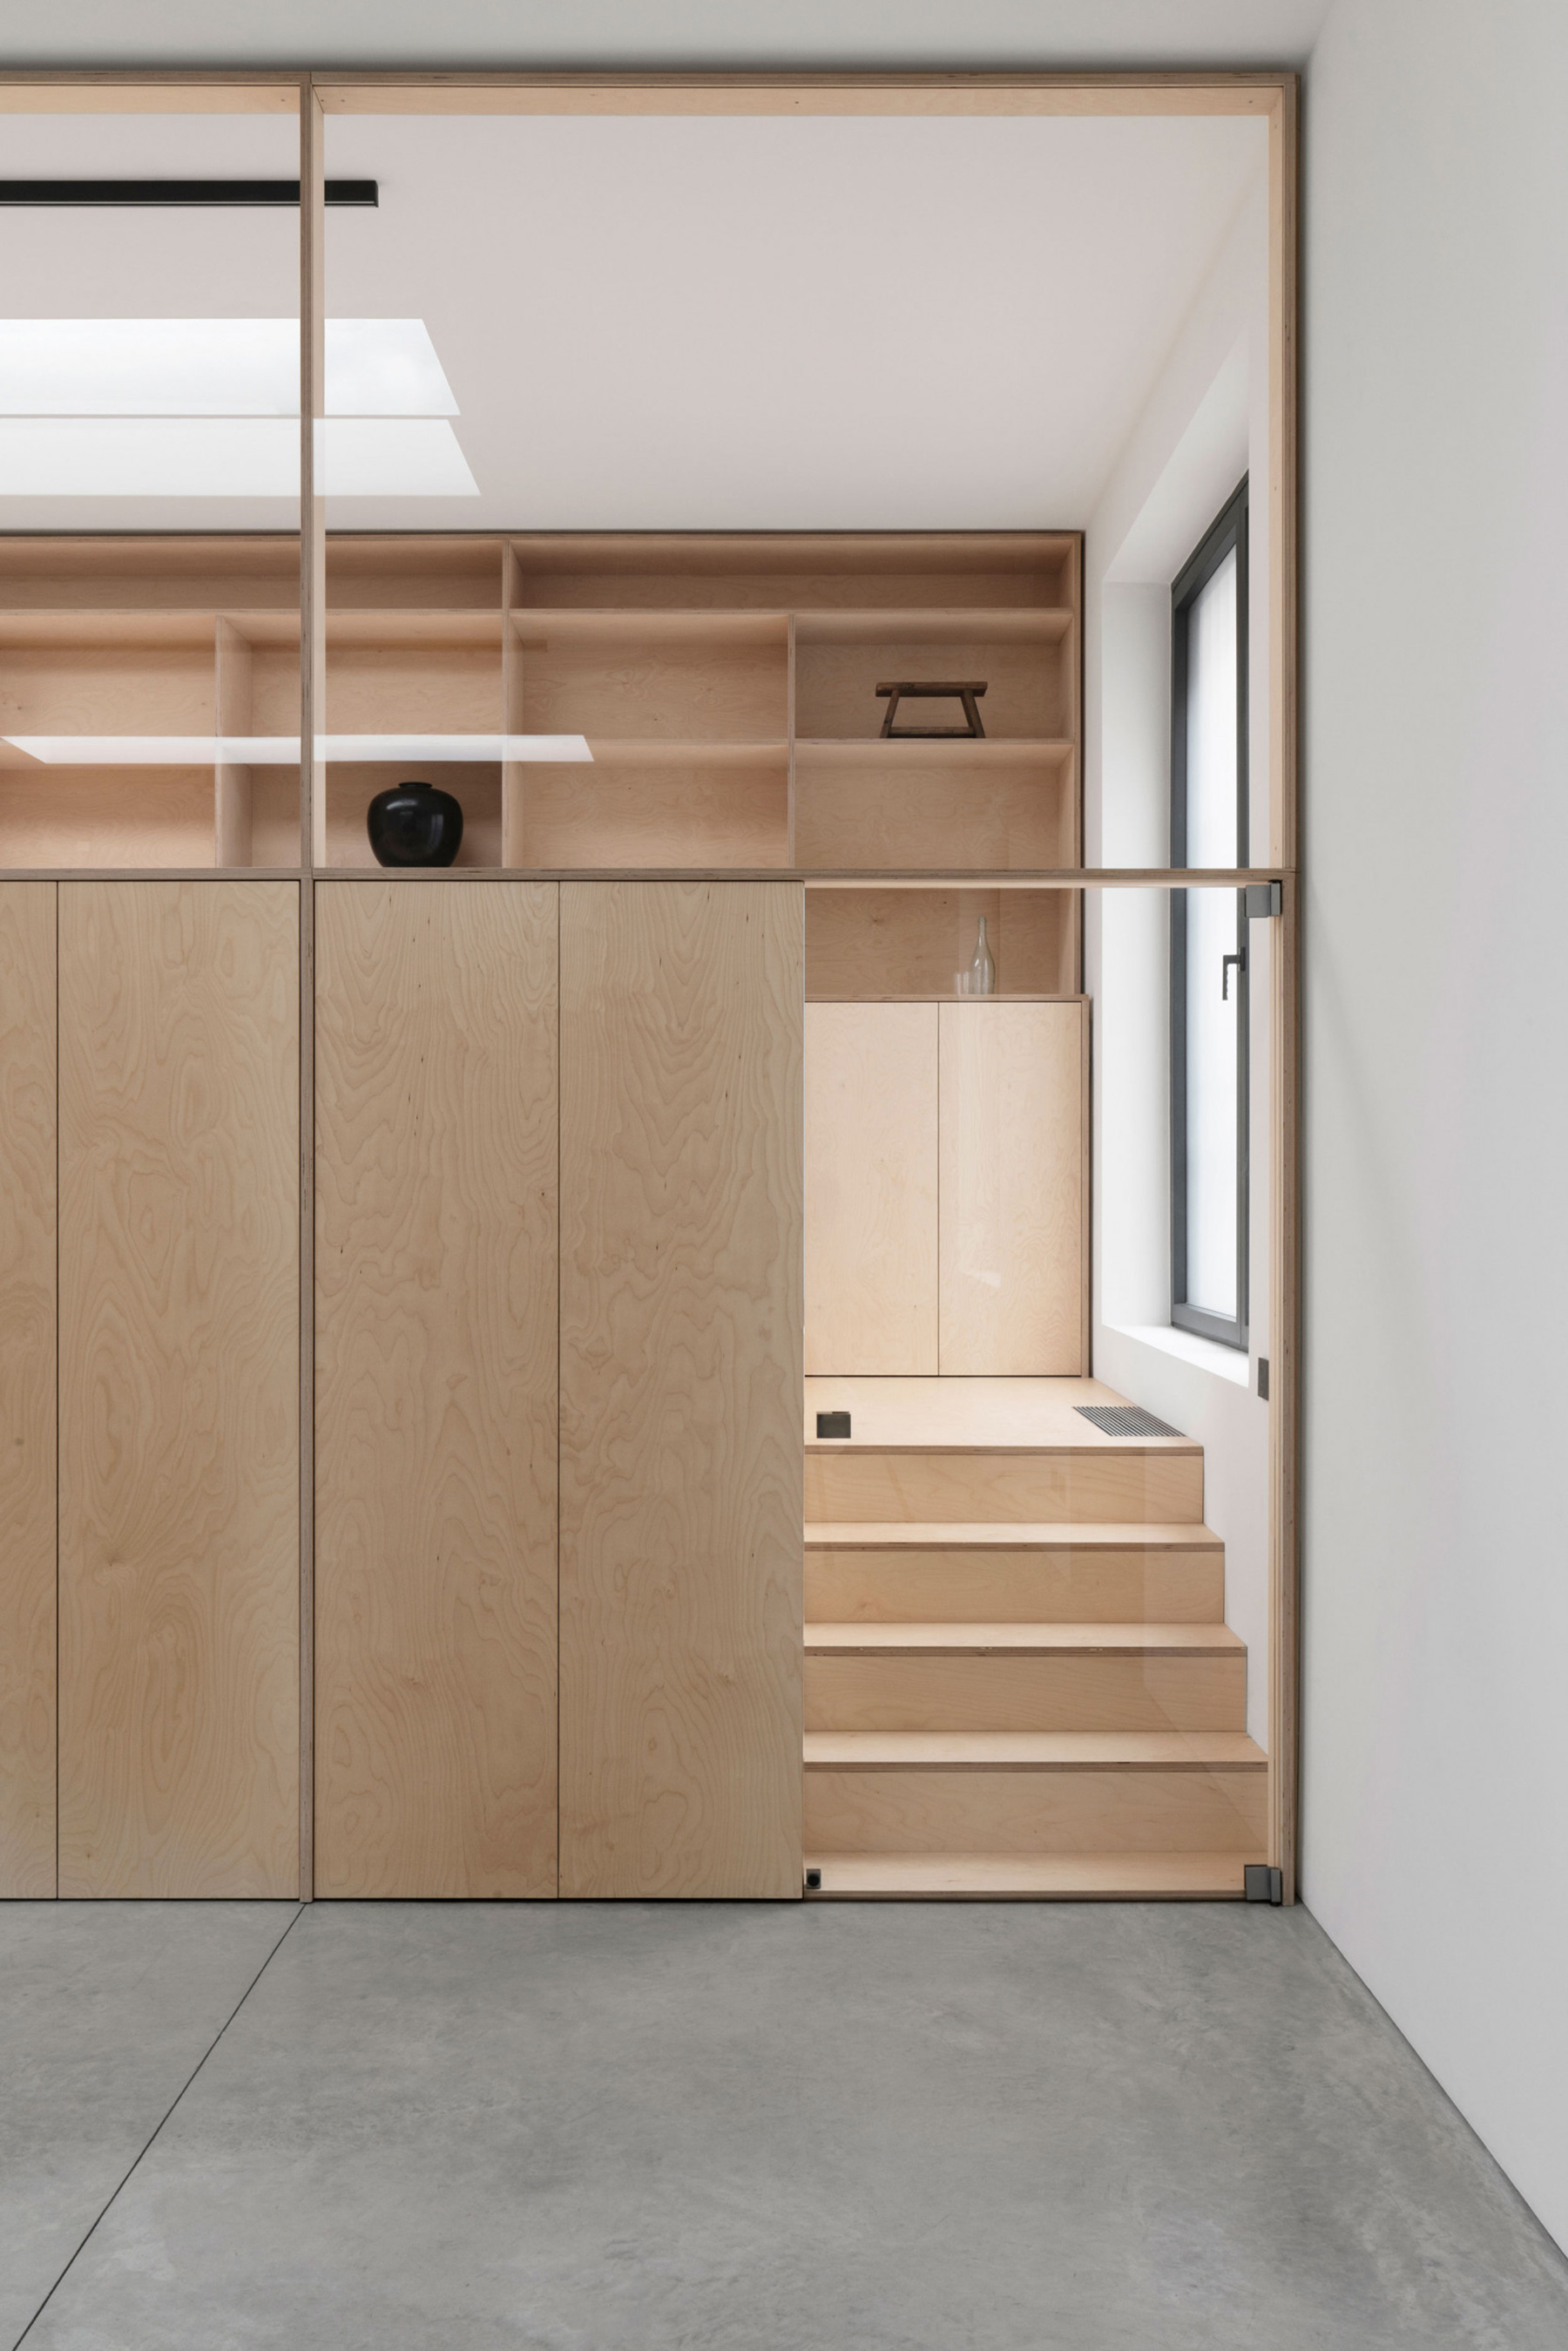 Home office idea by Italian designer Guglielmo Poletti